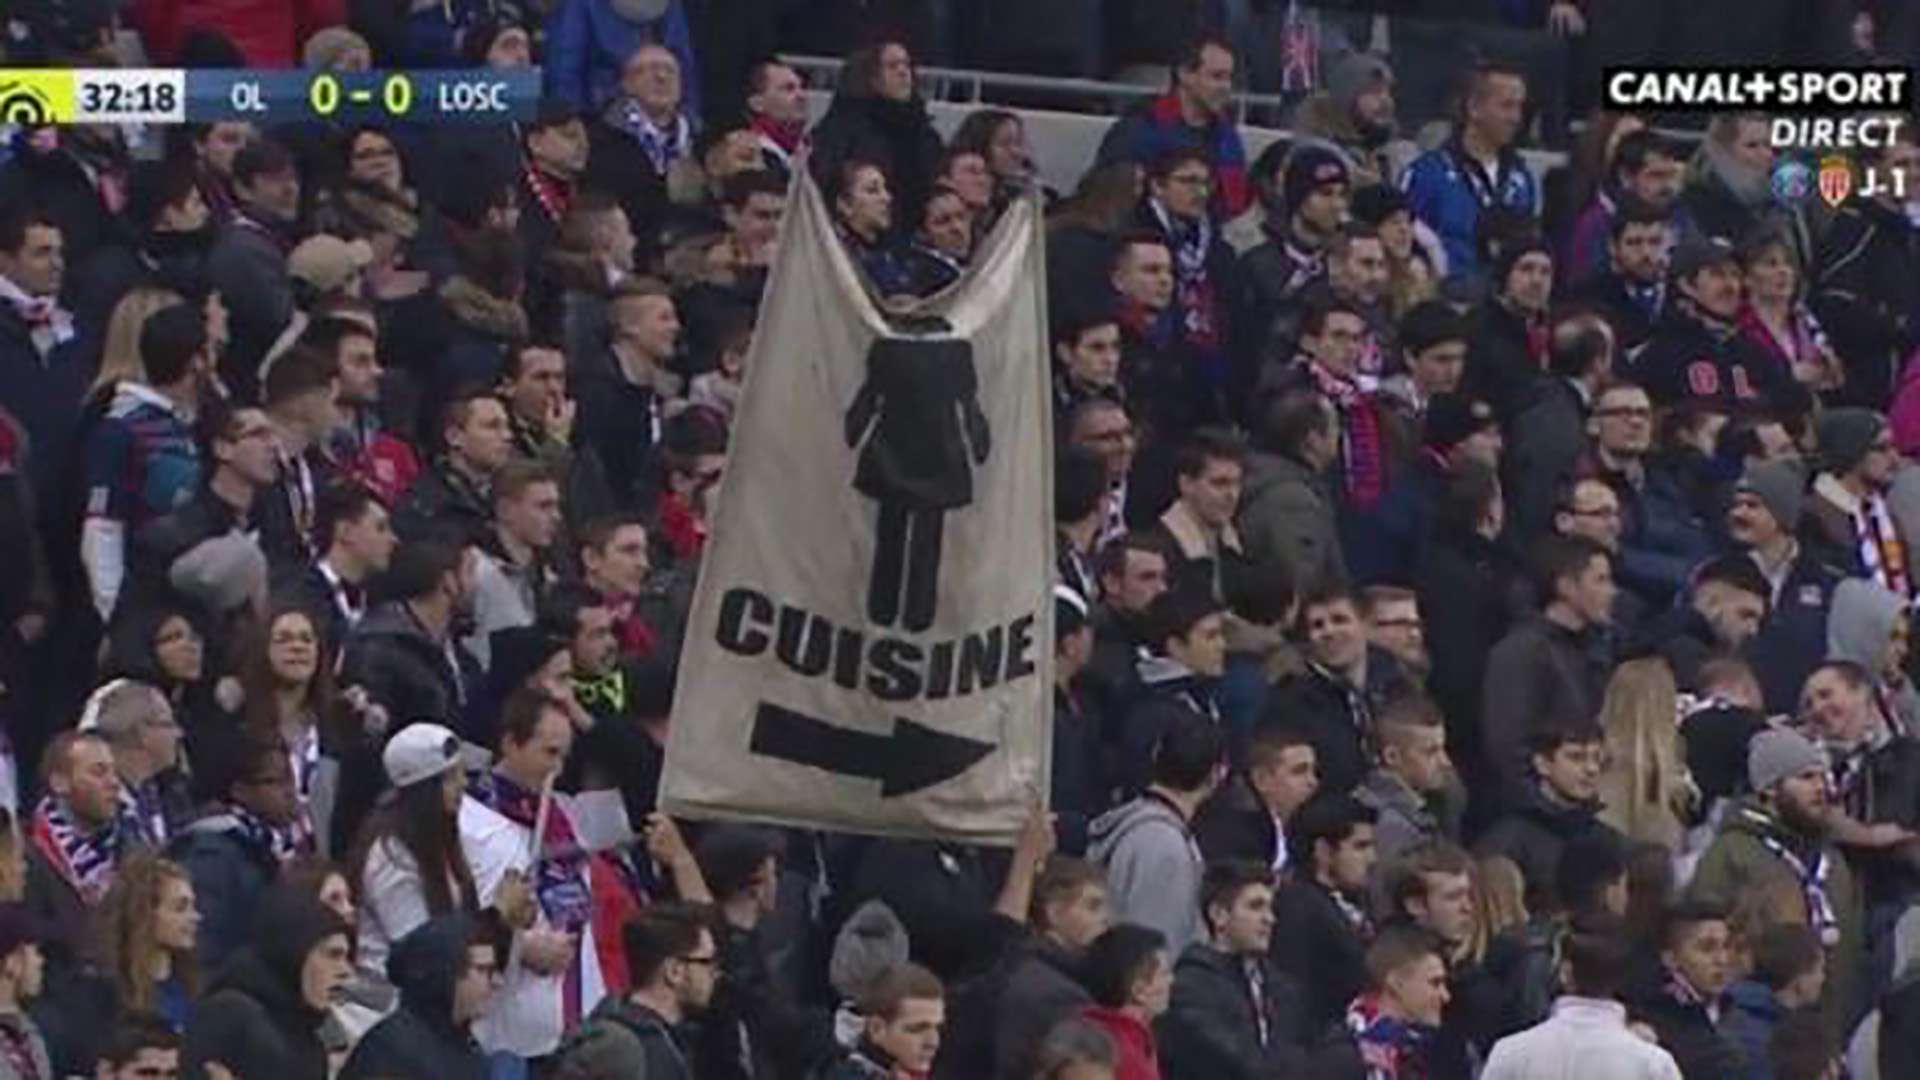 Lyon fans